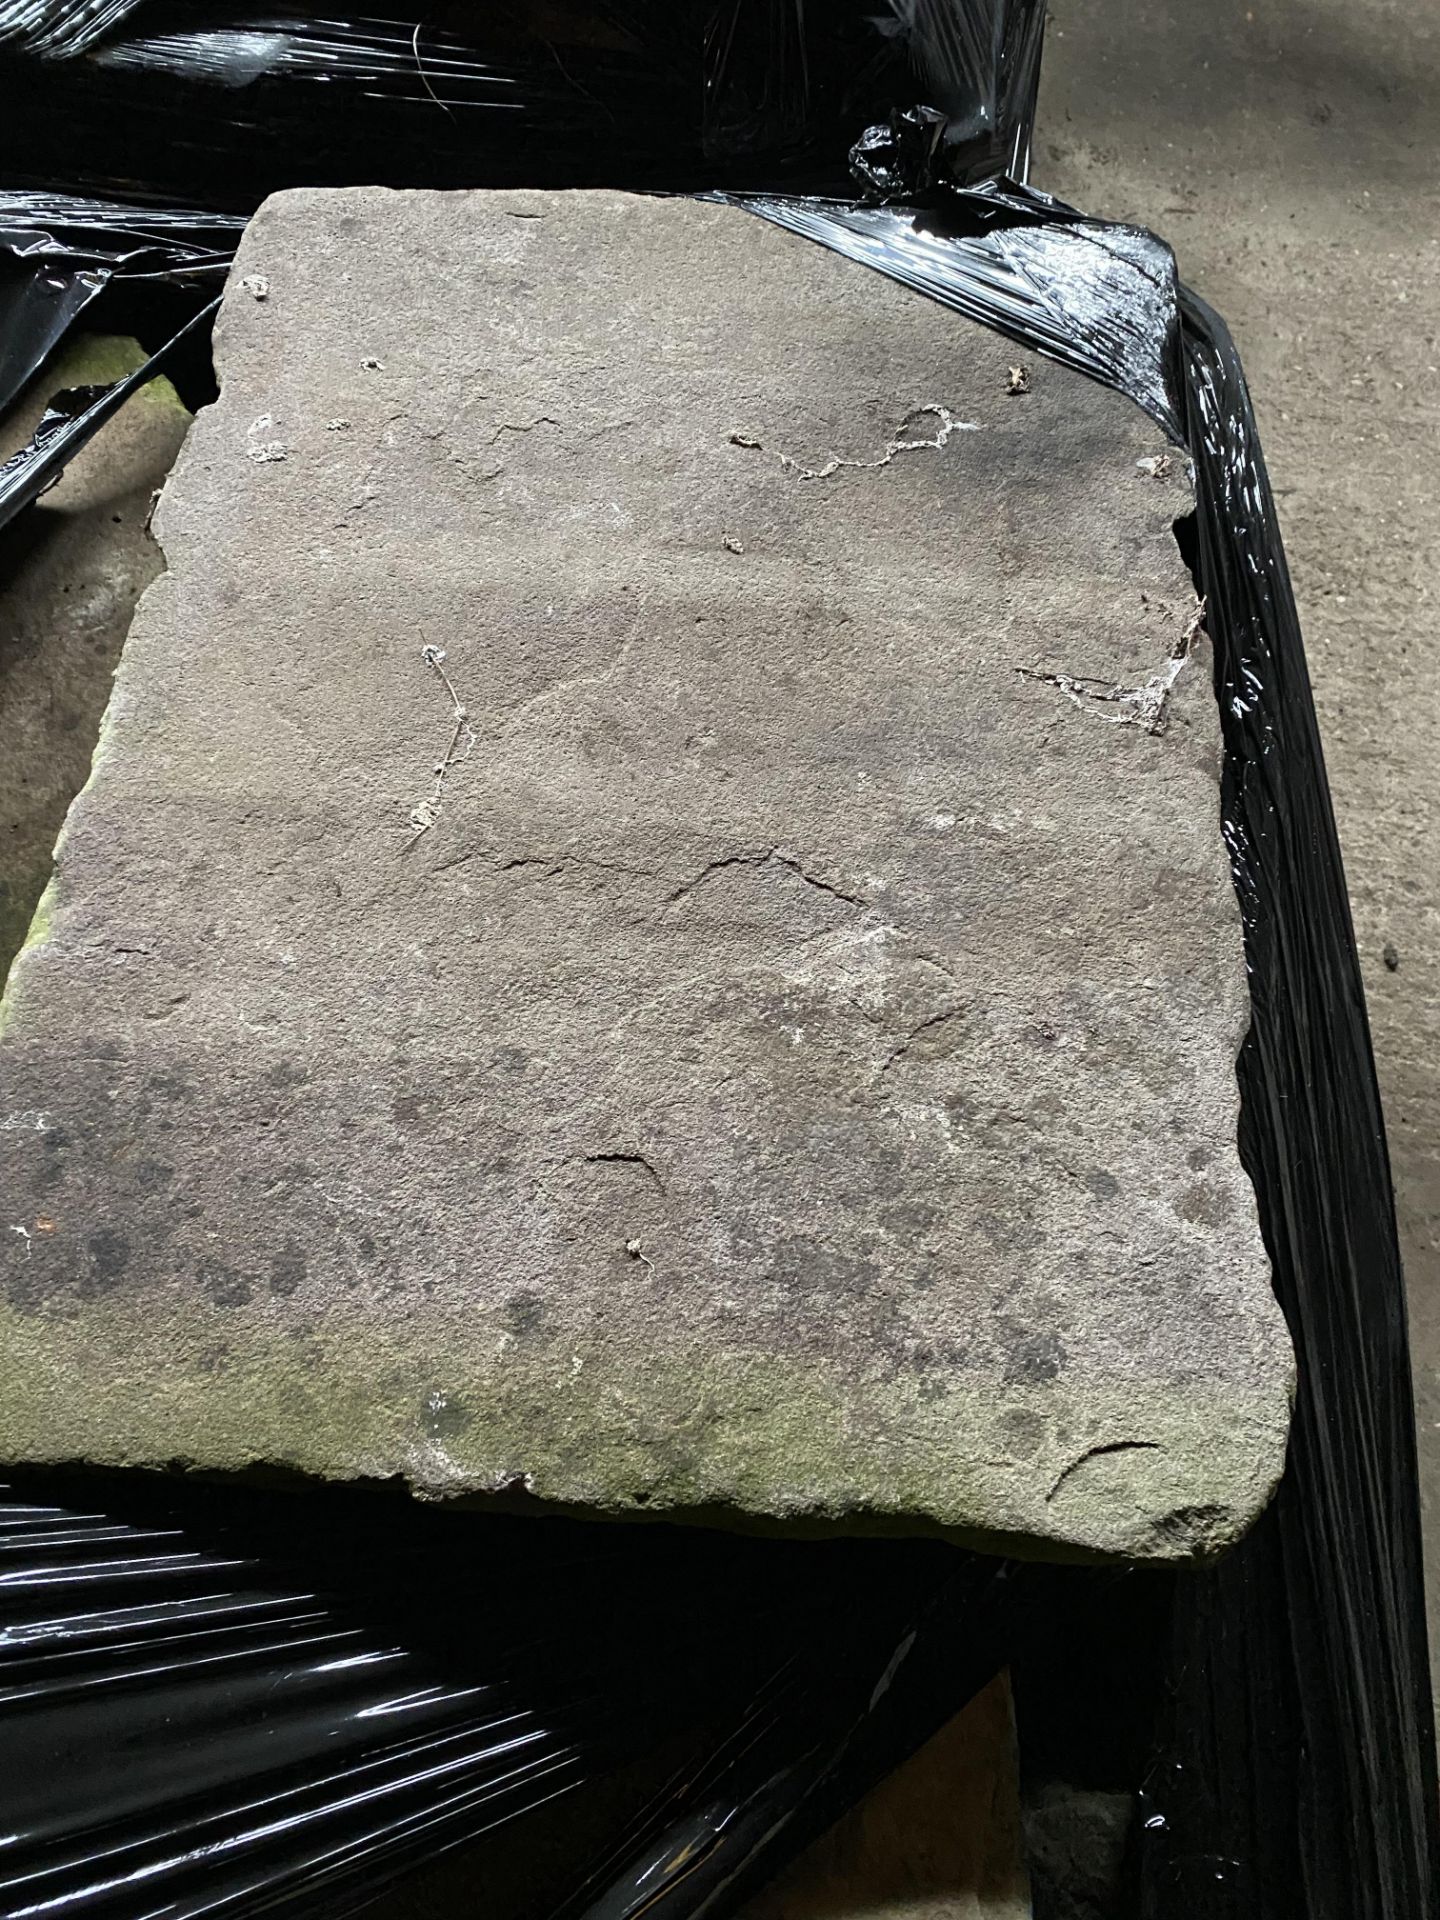 Quantity of York stone slabs